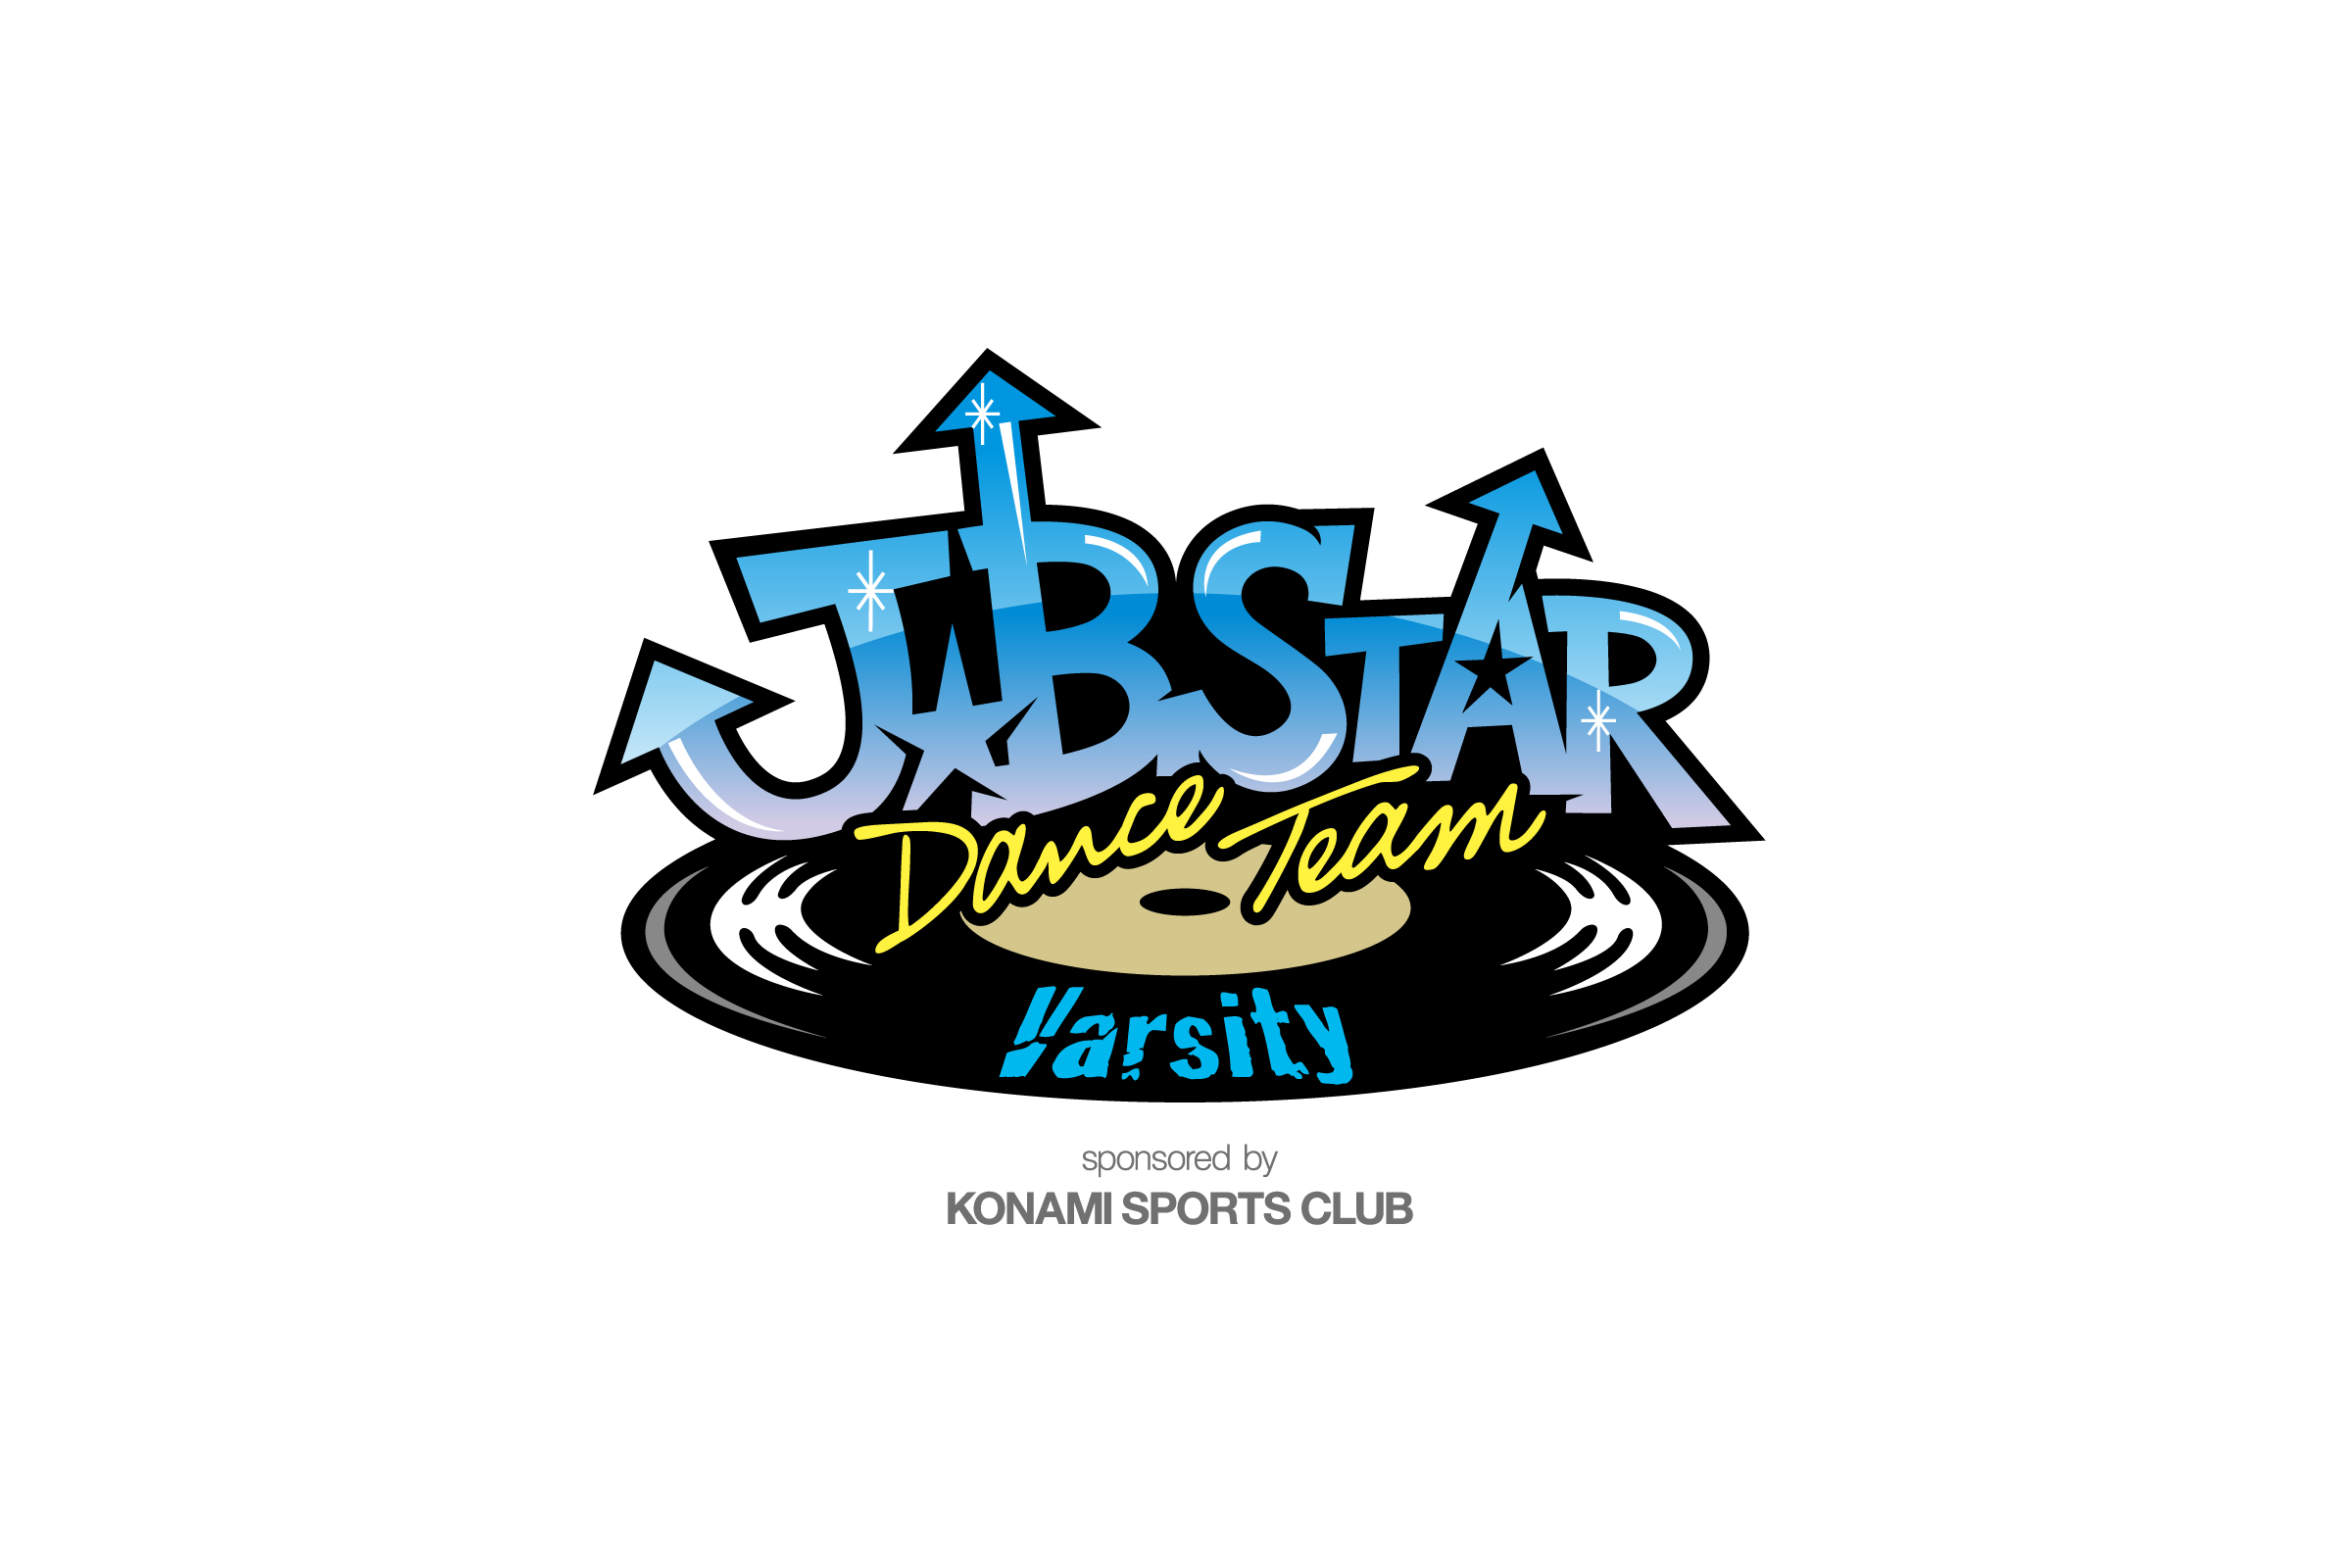 コナミスポーツクラブが誇るダンスチーム Konami J B Star ジェイ ビー スター 3チームのロゴマーク デザイン実績 ビーデザインディレクションズ